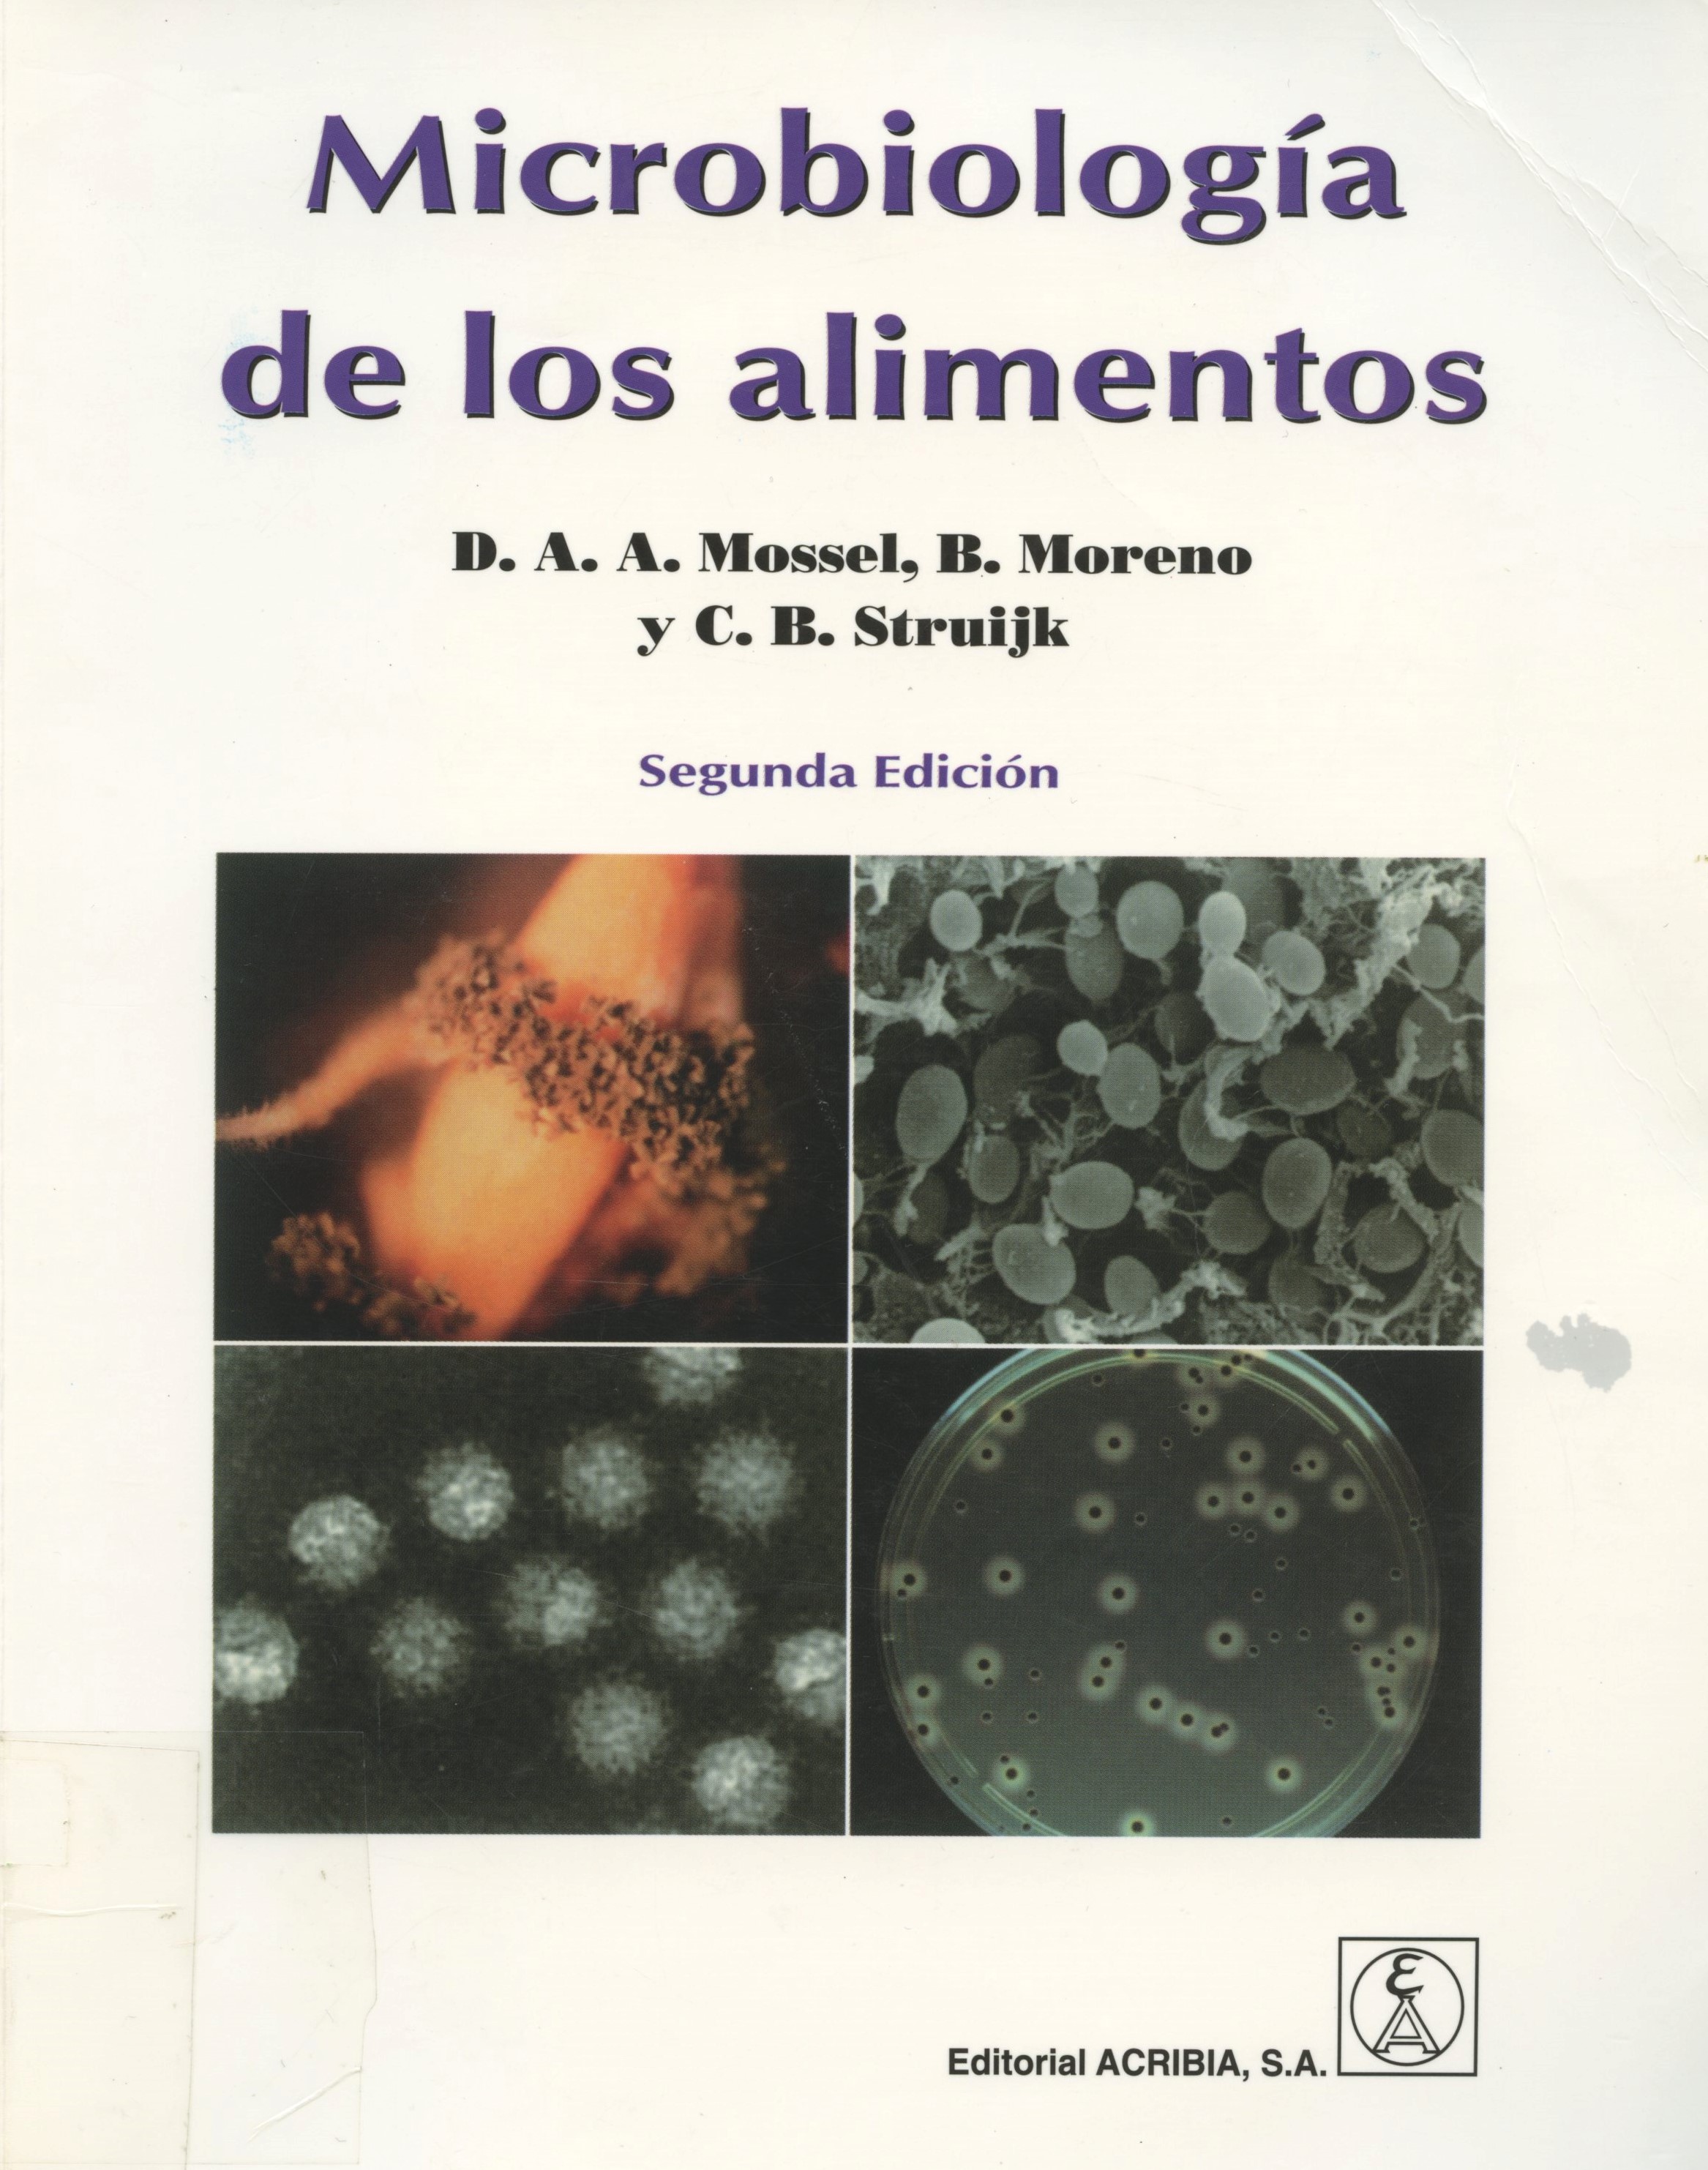 Imagen de portada del libro Microbiología de los alimentos